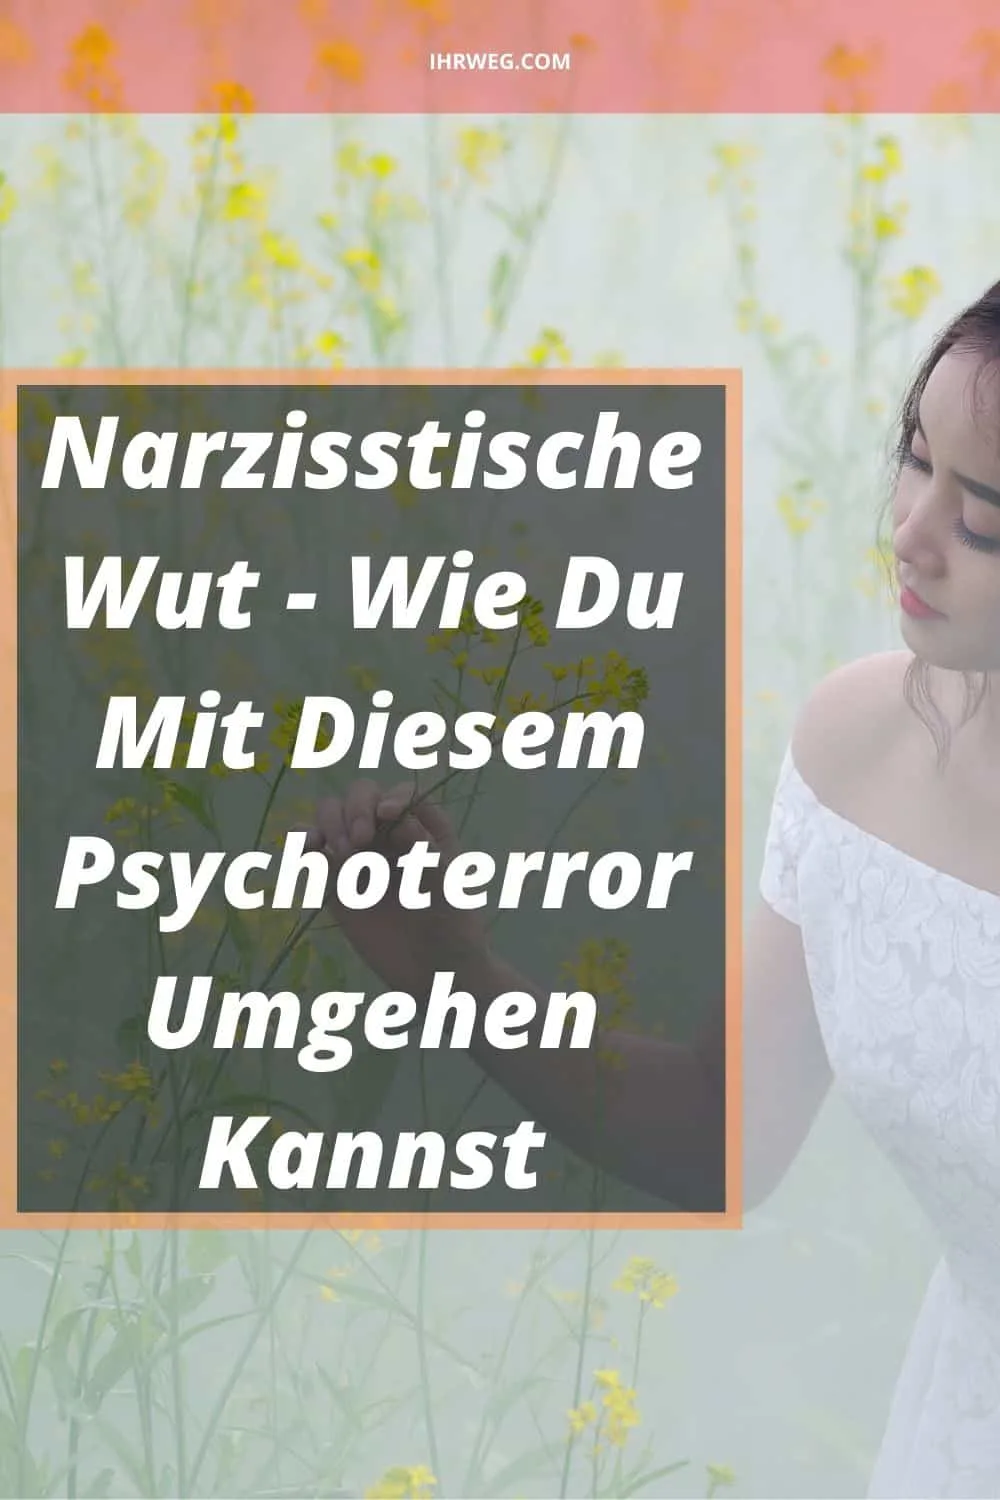 Narzisstische Wut - Wie Du Mit Diesem Psychoterror Umgehen Kannst